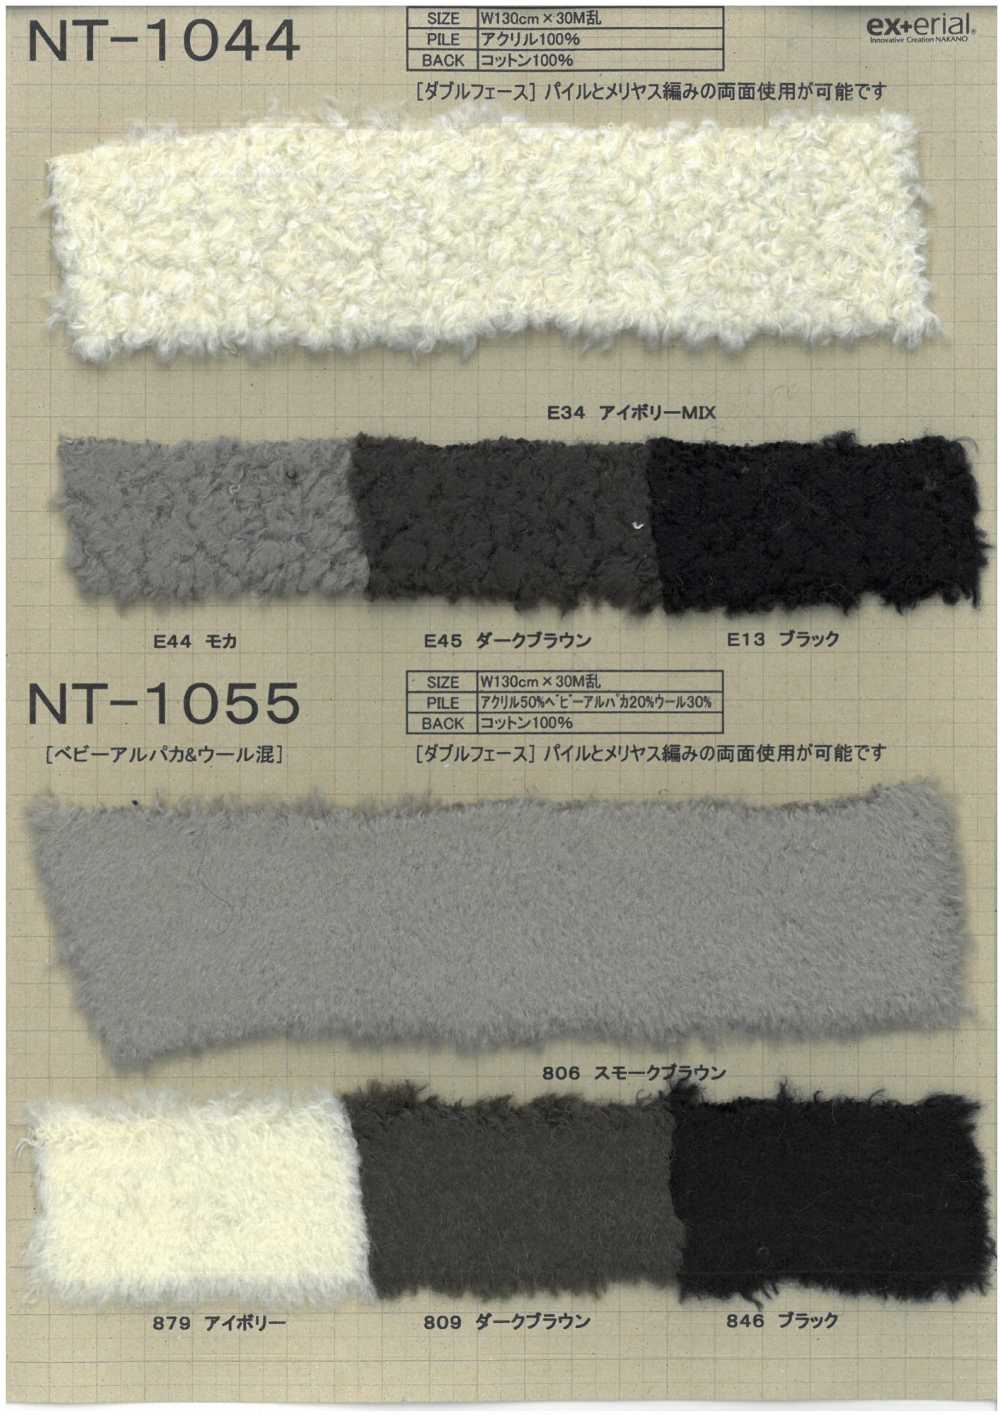 NT-1044 Fourrure Artisanale [mouton Double Face][Fabrication De Textile] Industrie Du Jersey Nakano